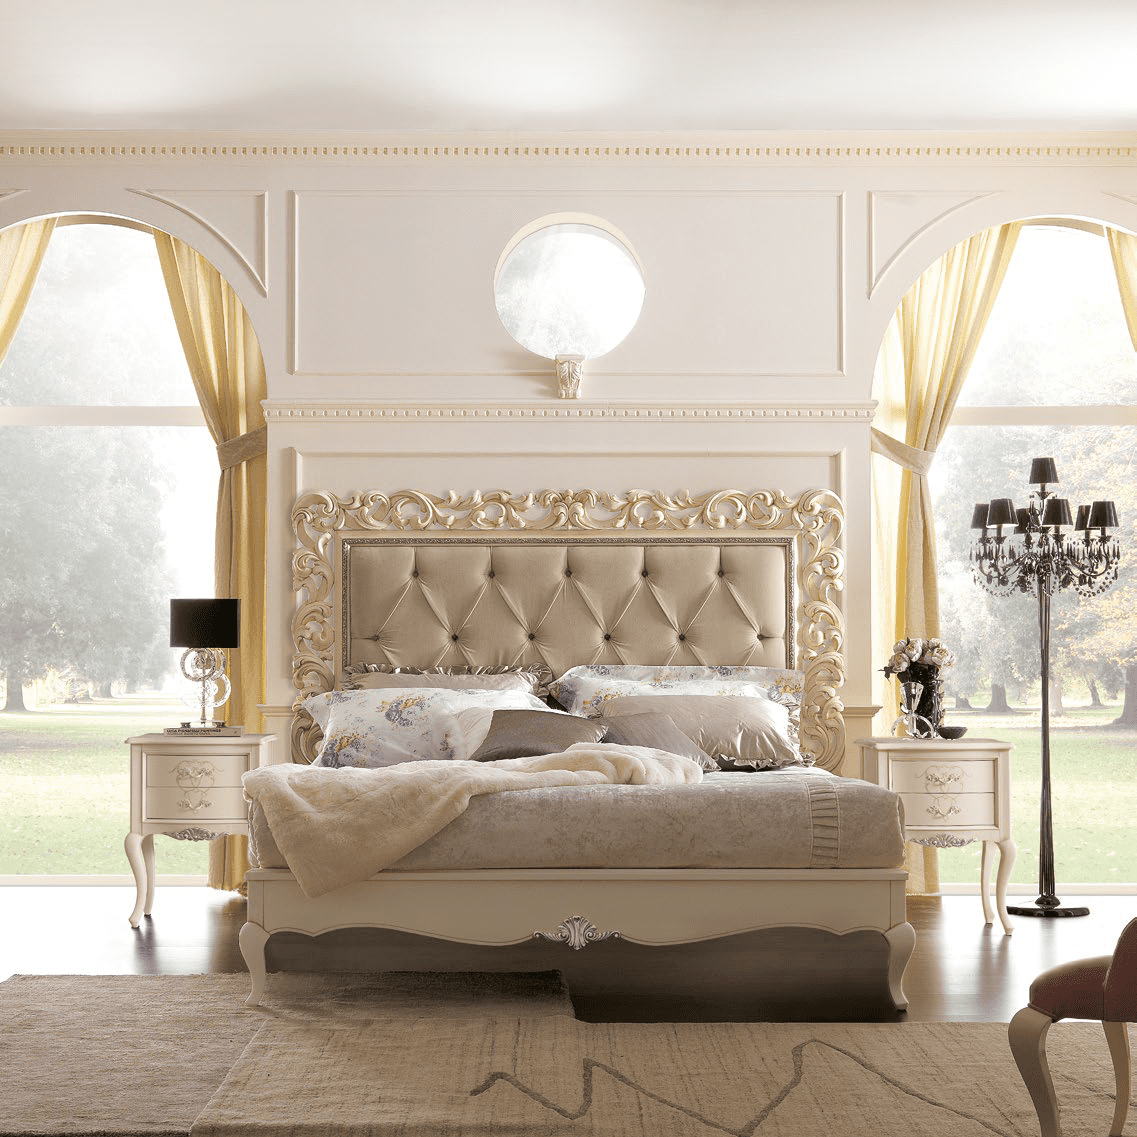 Мебель для спальни из коллекции MEMORIE VENEZIANE из Италии